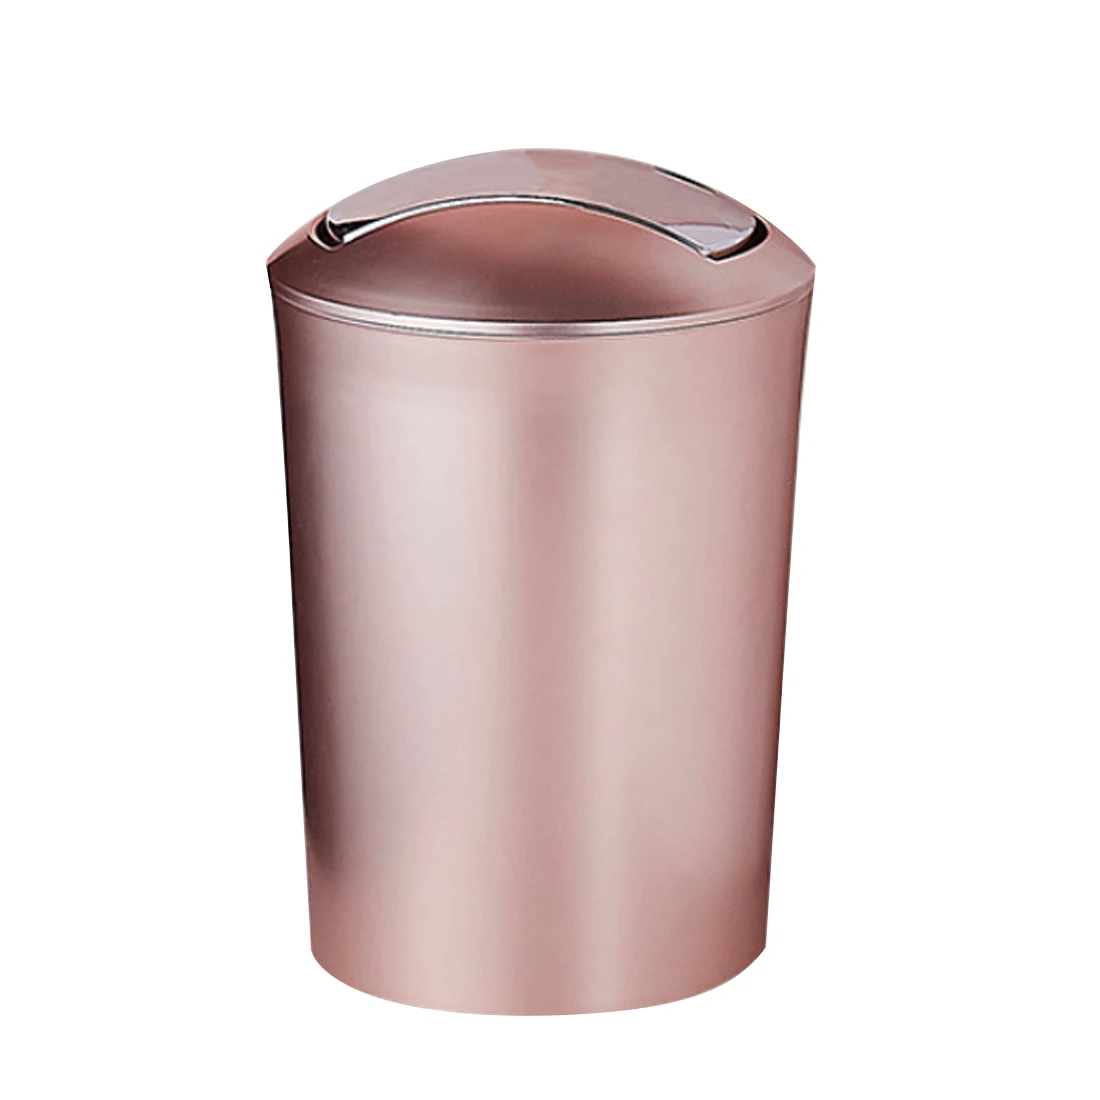 Большая емкость 10л Европейский стиль прочный мусорный бак пластиковый мусорный бак с крышкой ванная кухня мусорные баки поставки - Цвет: Rose Gold